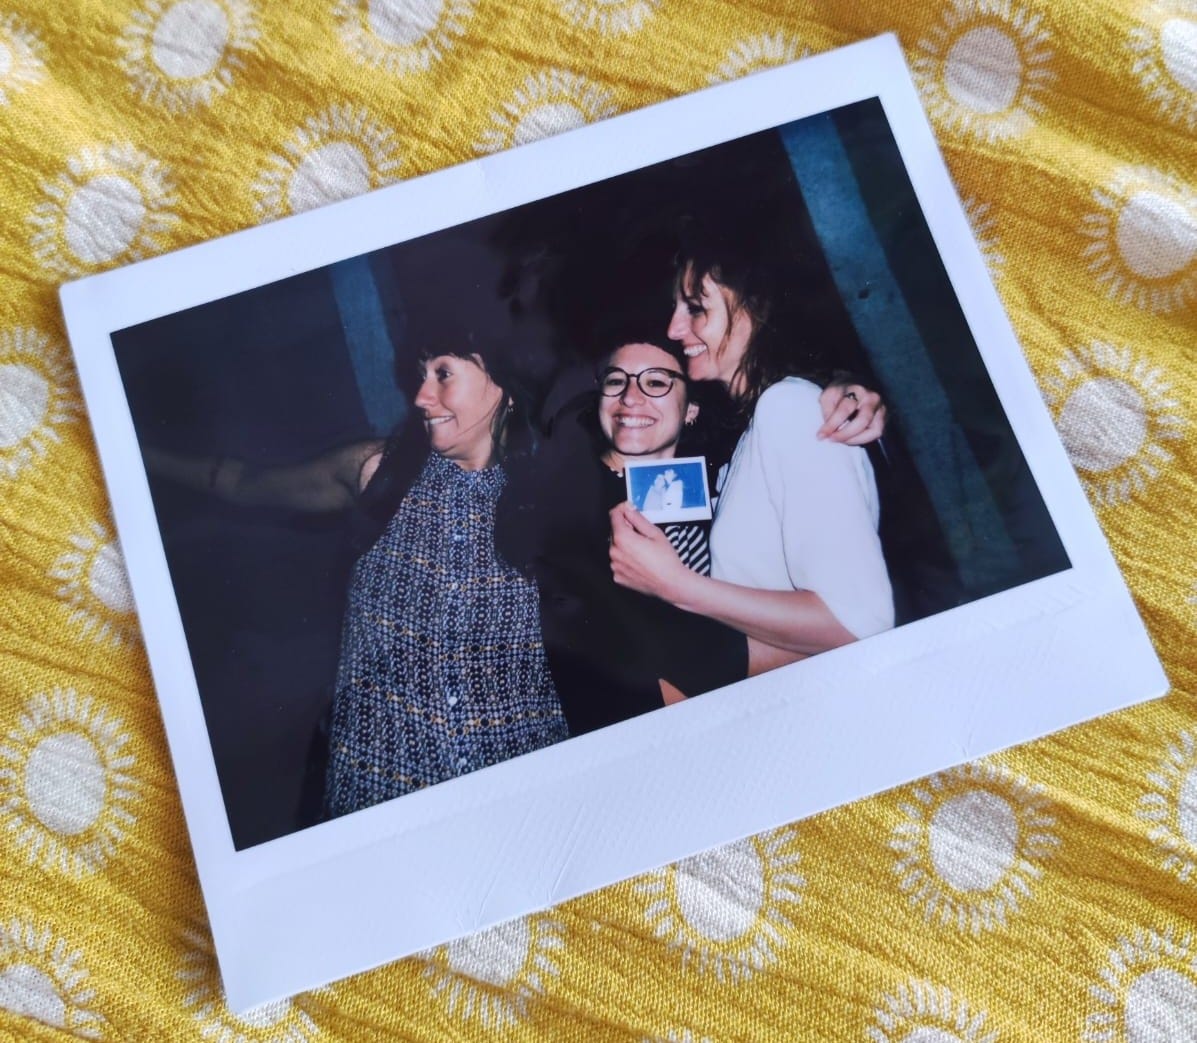 Polaroid con tre amiche su uno sfondo giallo. Da sinistra a destra: una persona girata di lato che sta chiamando altre persone, una persona che guarda in camera abbracciata a una terza persona che sta ridendo.